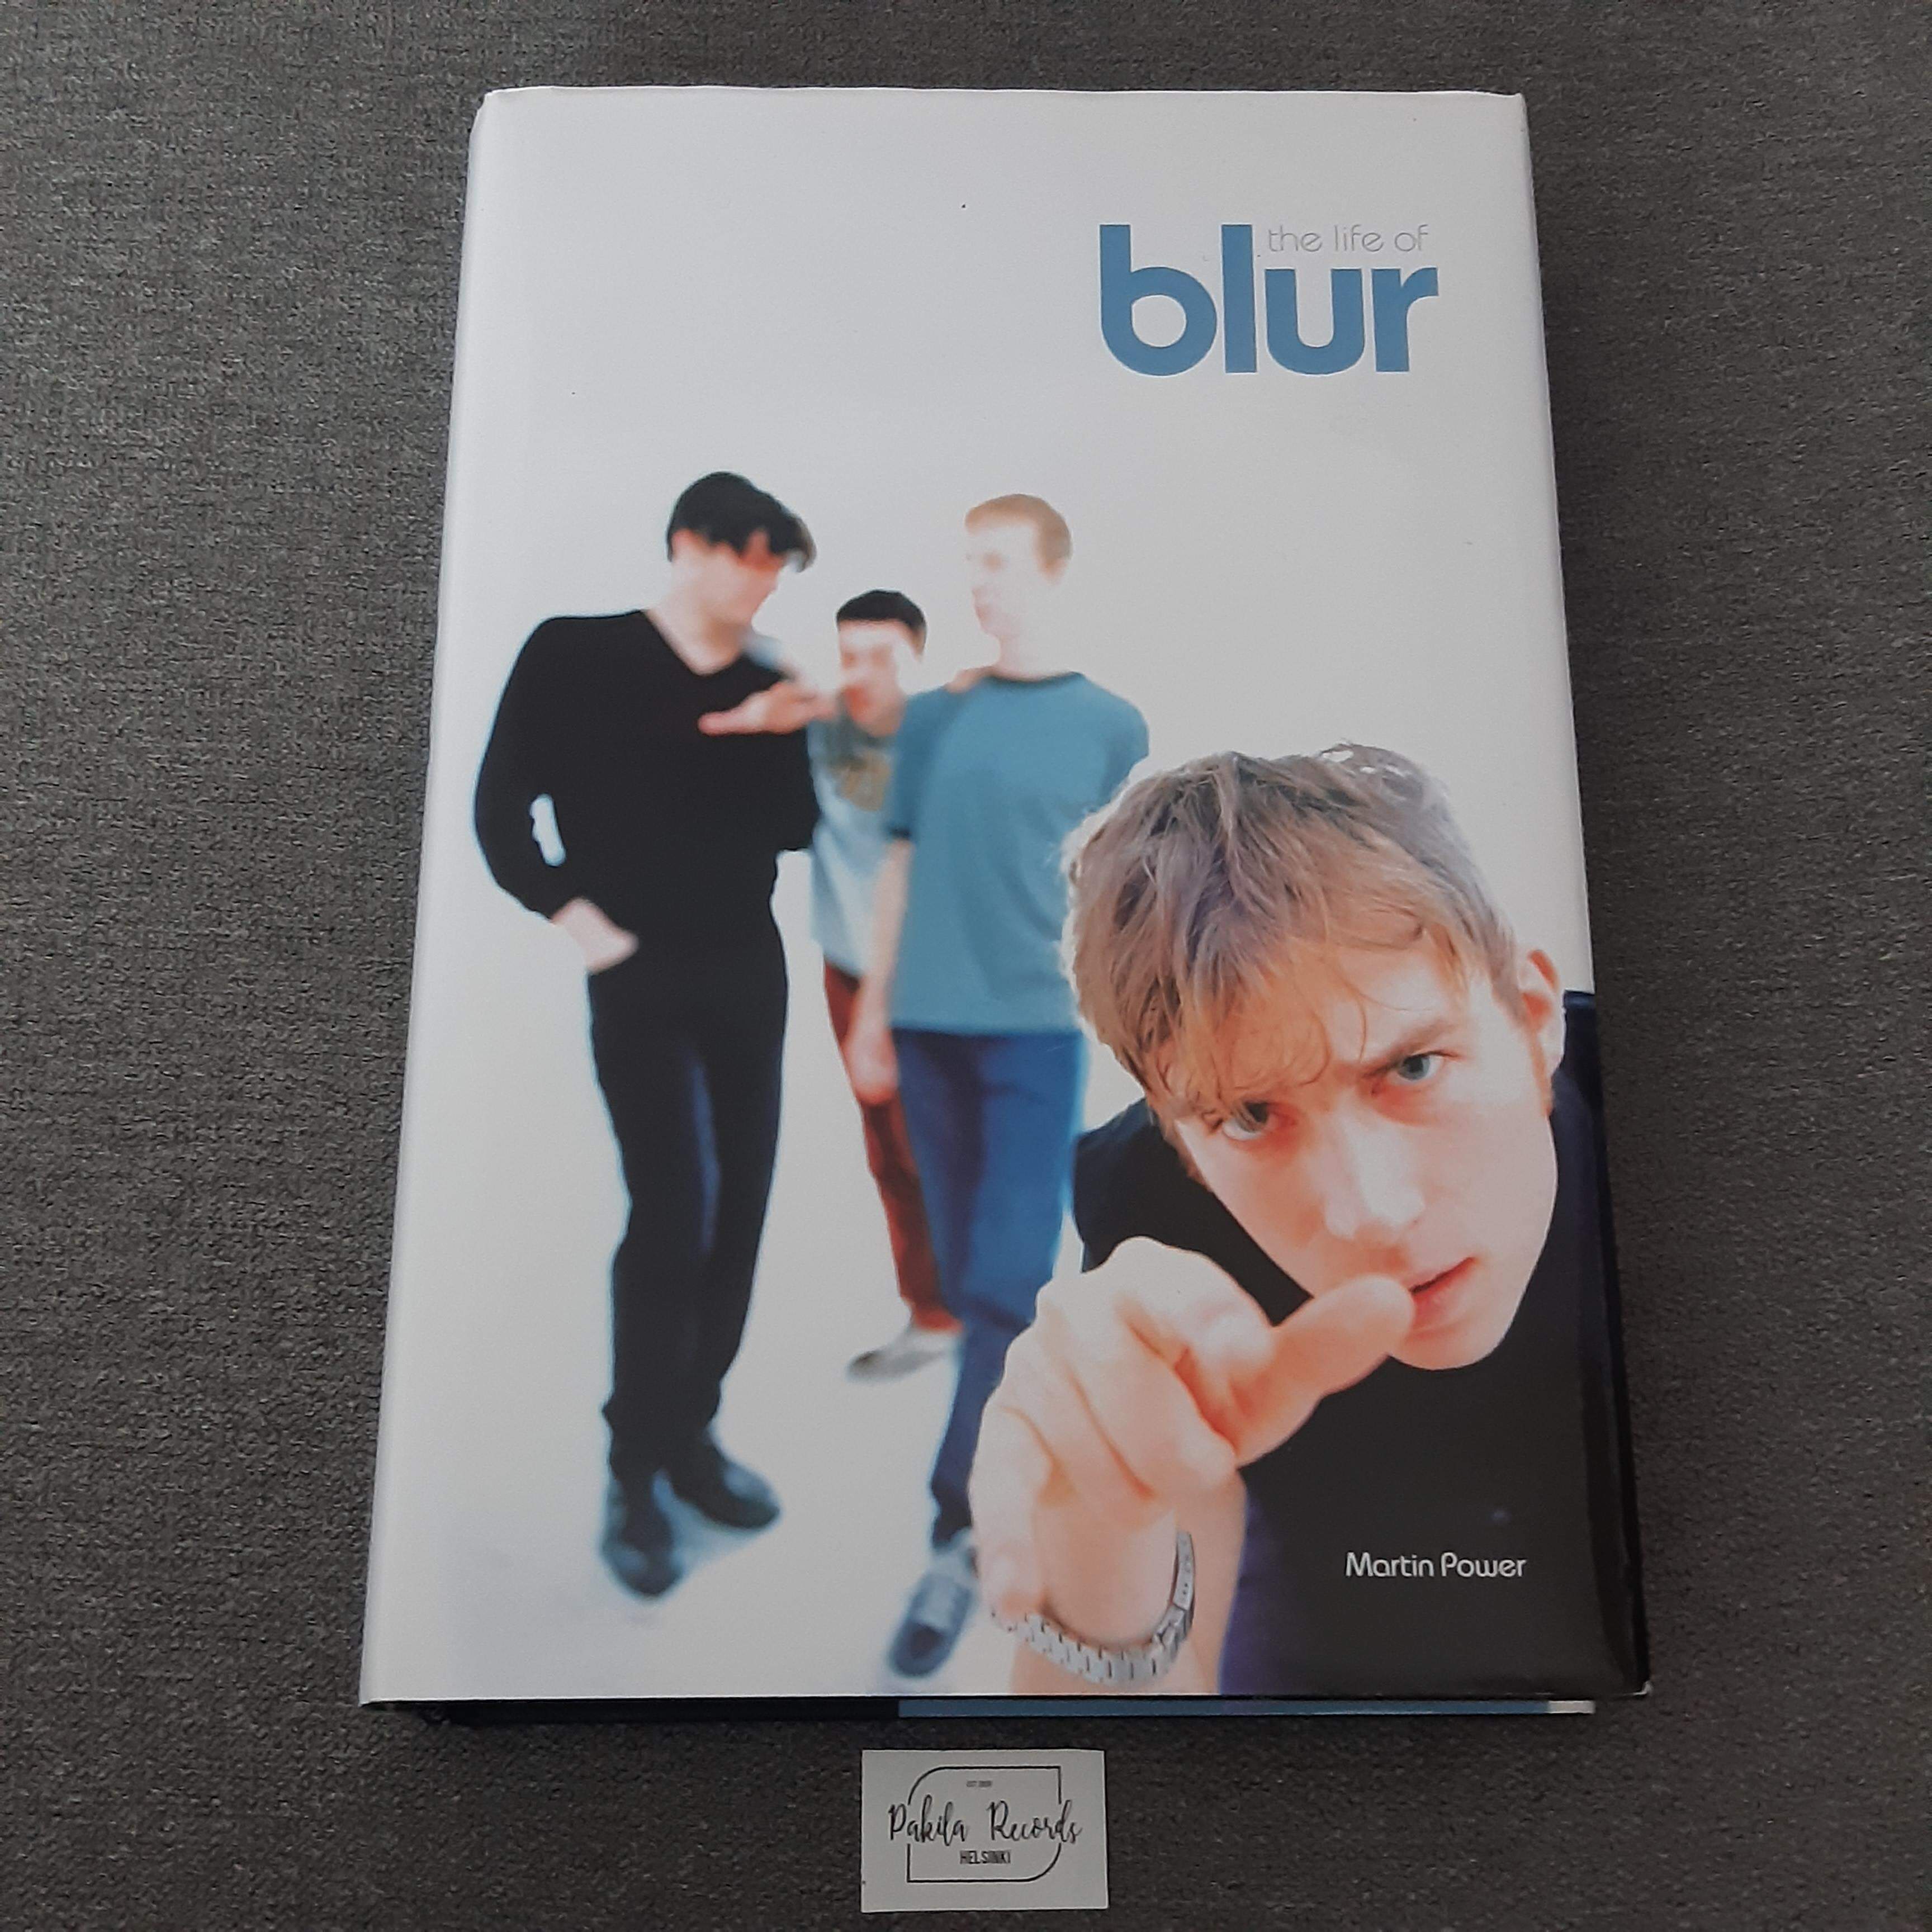 The Life Of Blur - Martin Power - Kirja (käytetty)